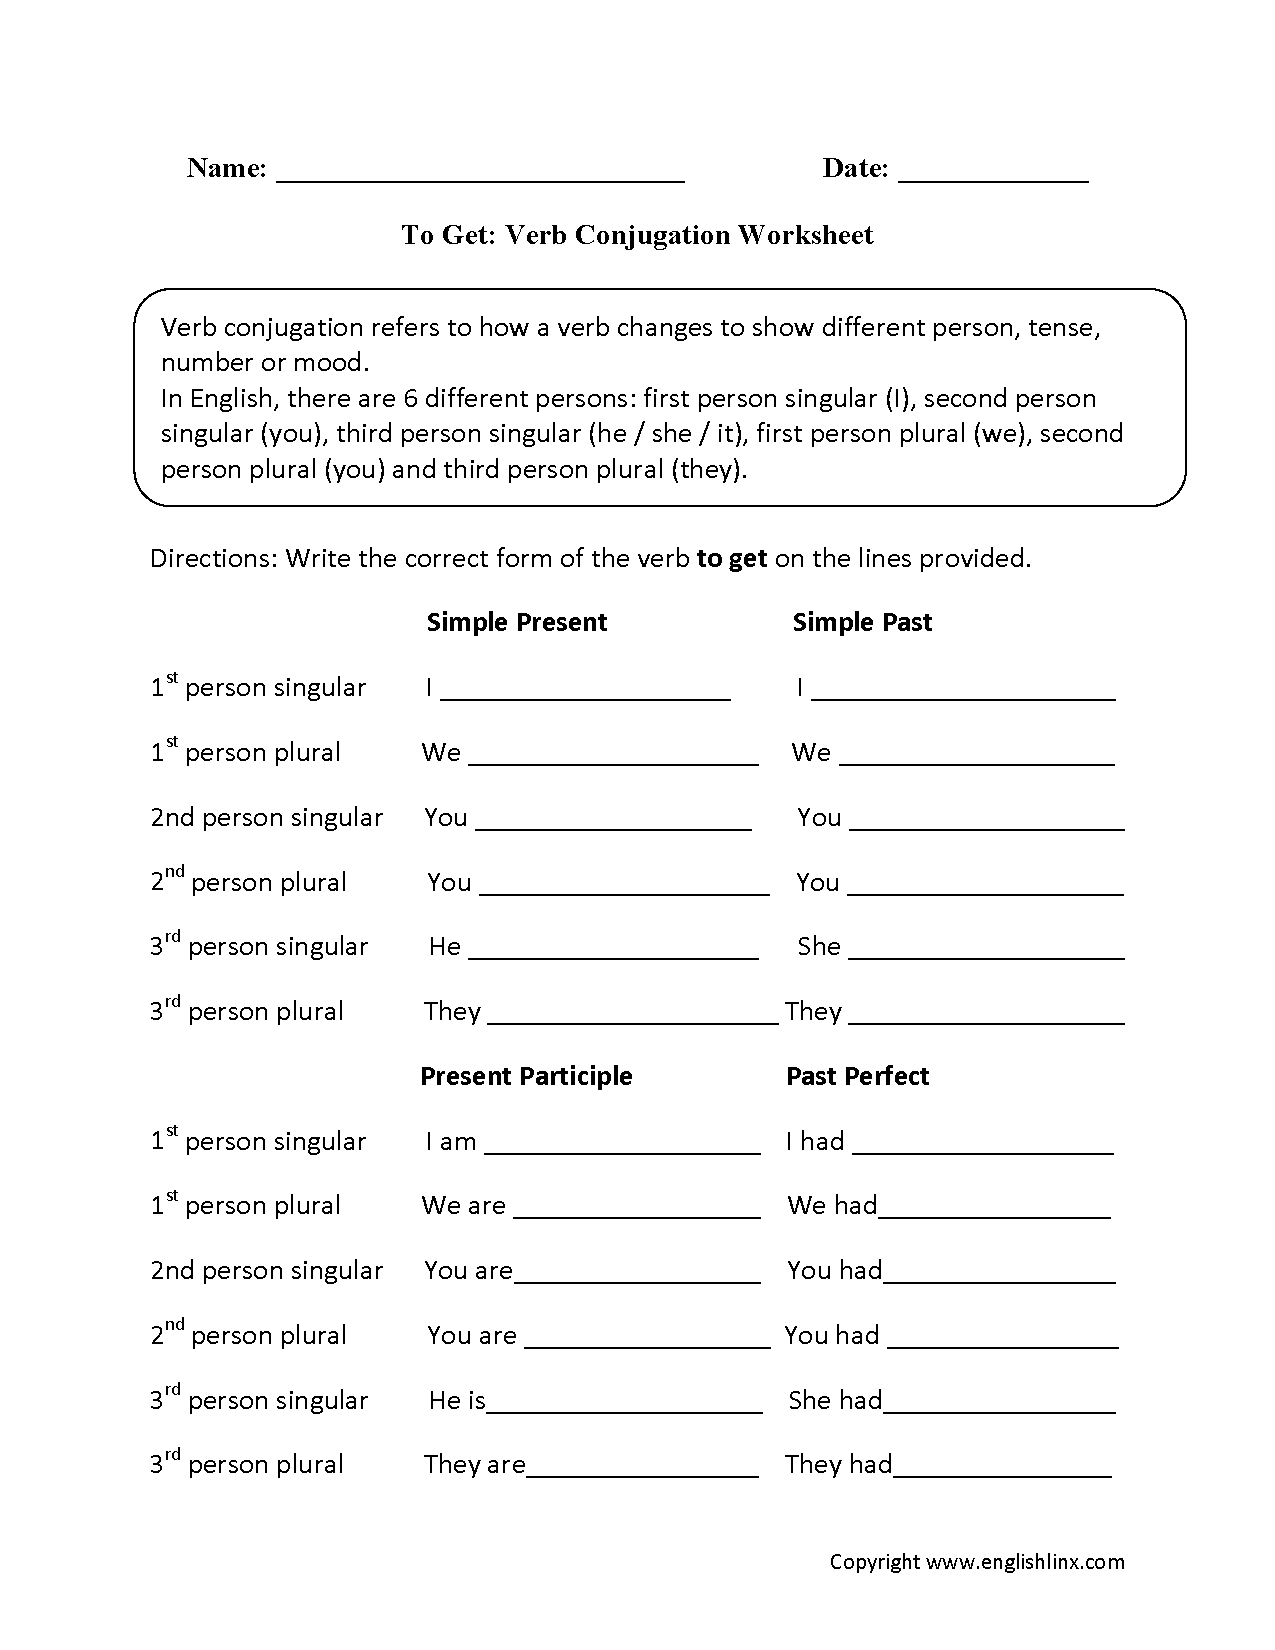 To Get Verb Conjugation Worksheets